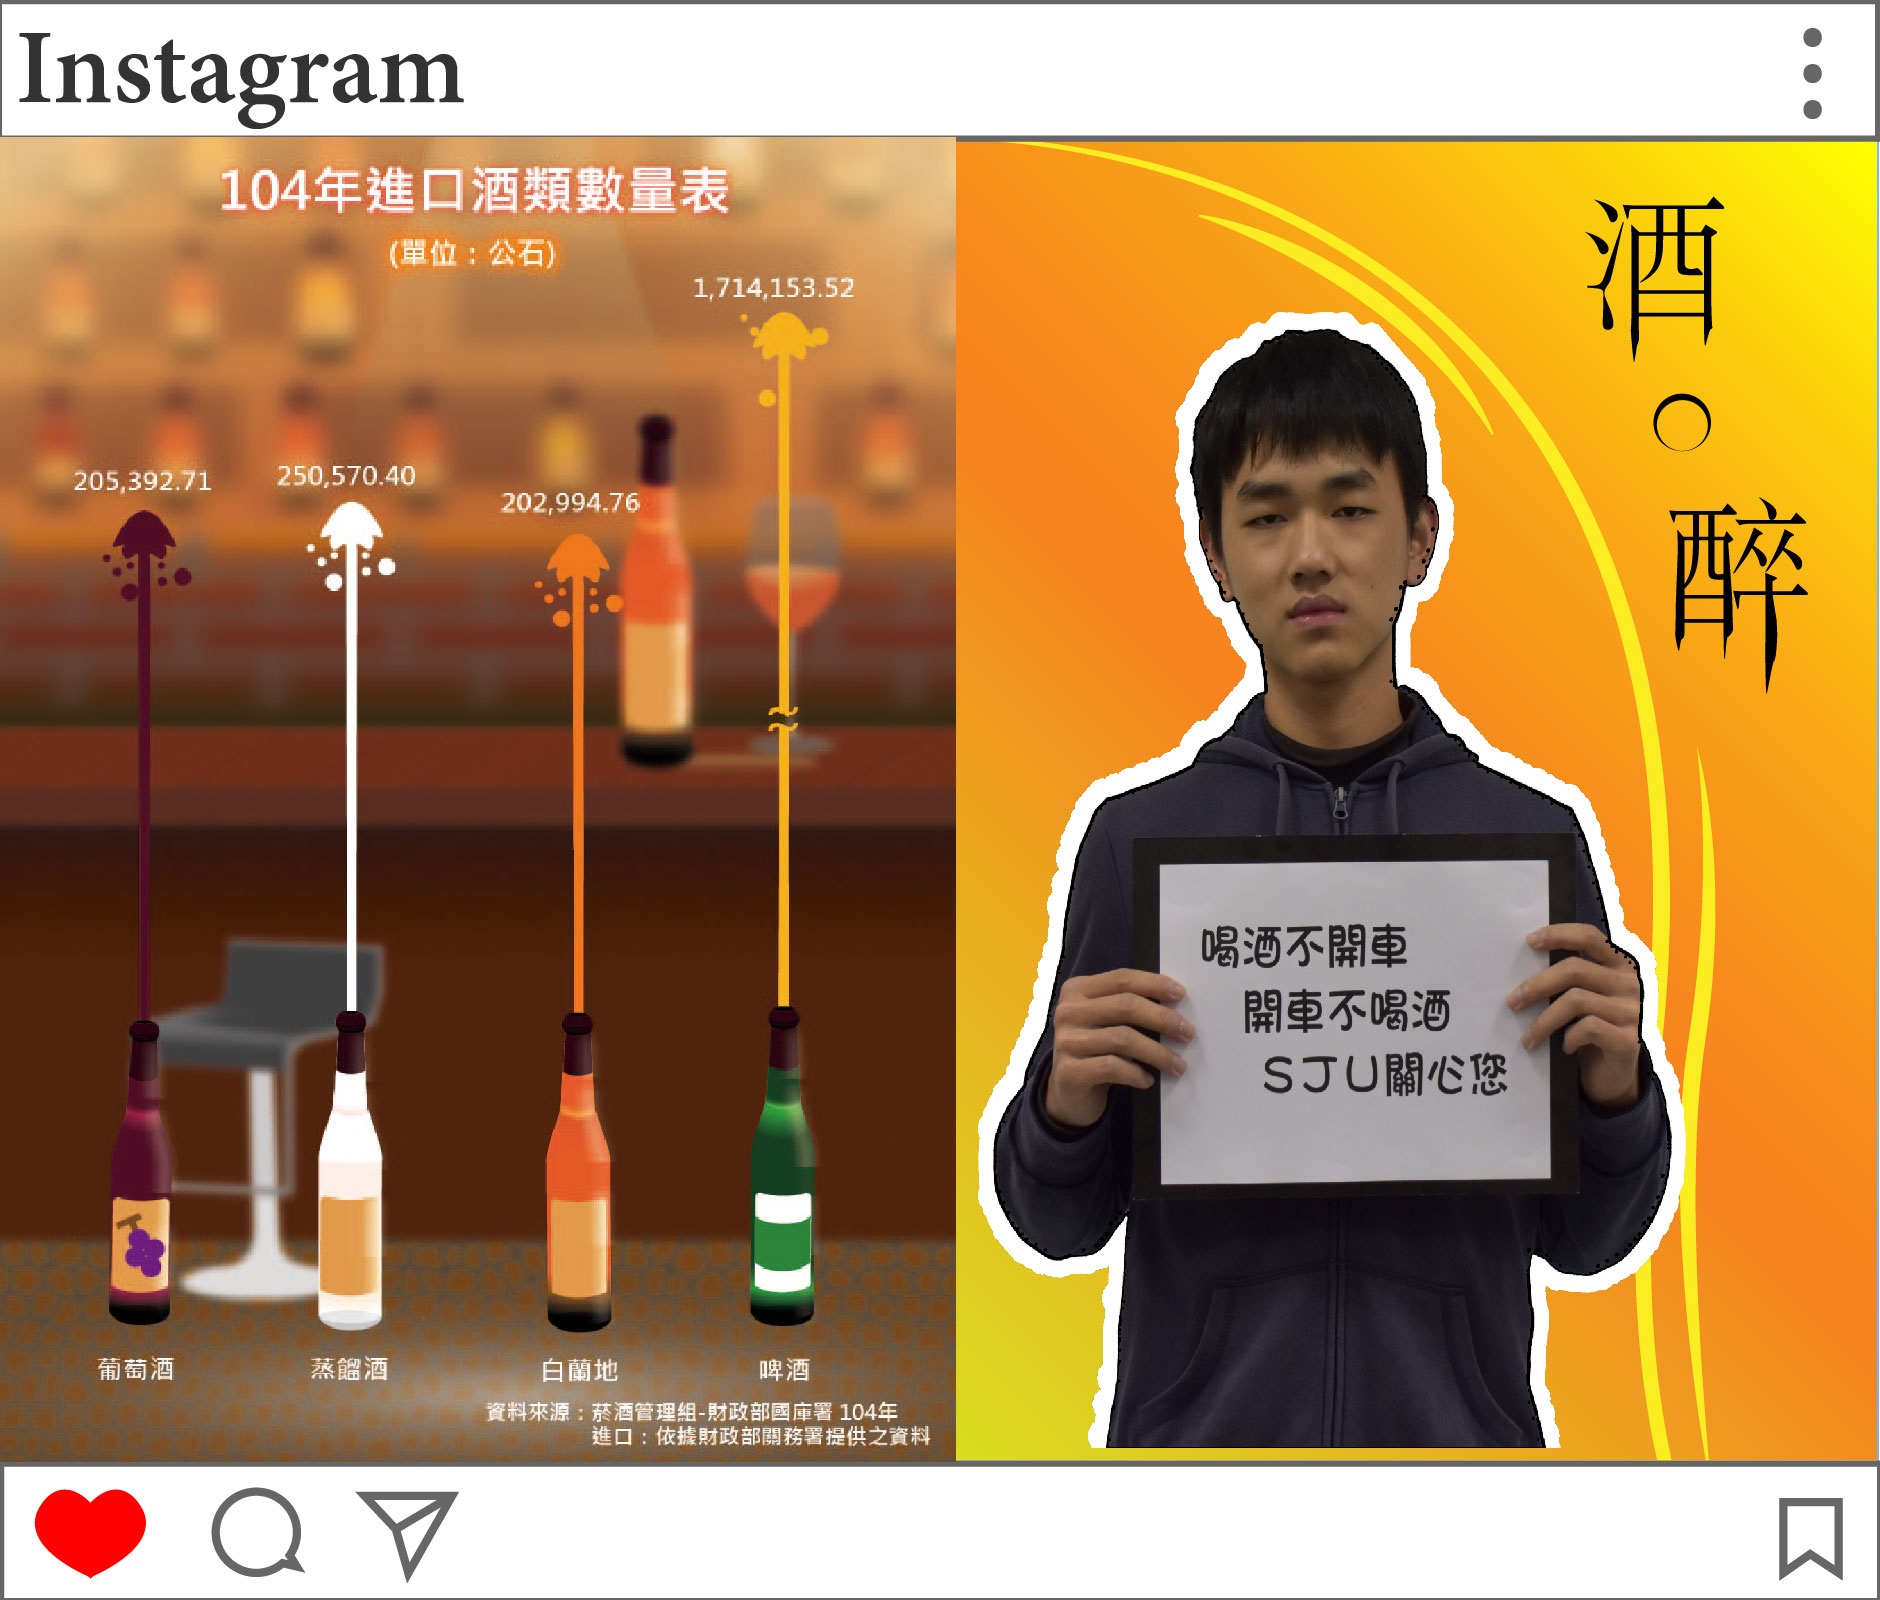 李彥佑參加創意統計圖競賽獲得佳作肯定，在此呼籲大家「喝酒不開車，開車不喝酒」、「請珍惜自己與他人的生命」